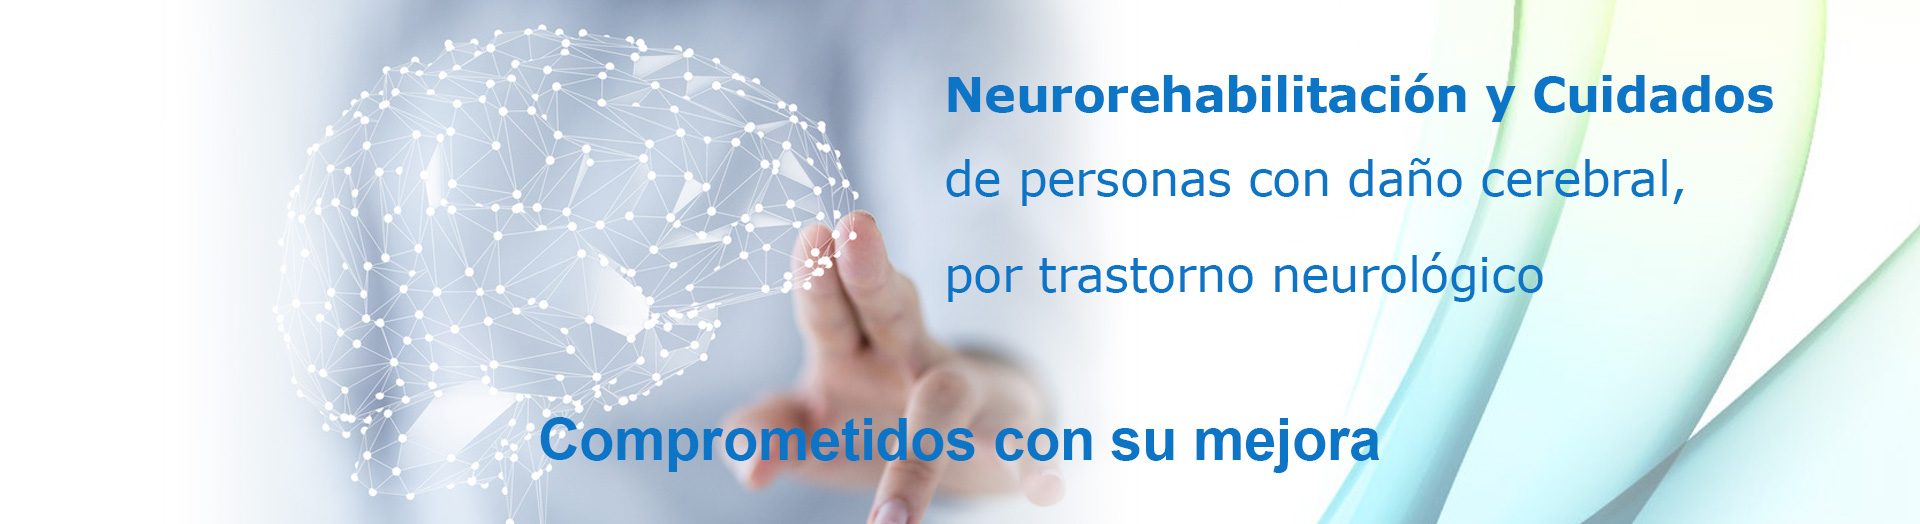 Neurorehabilitación y Cuidados de personas con daño cerebral por trastorno neurológico